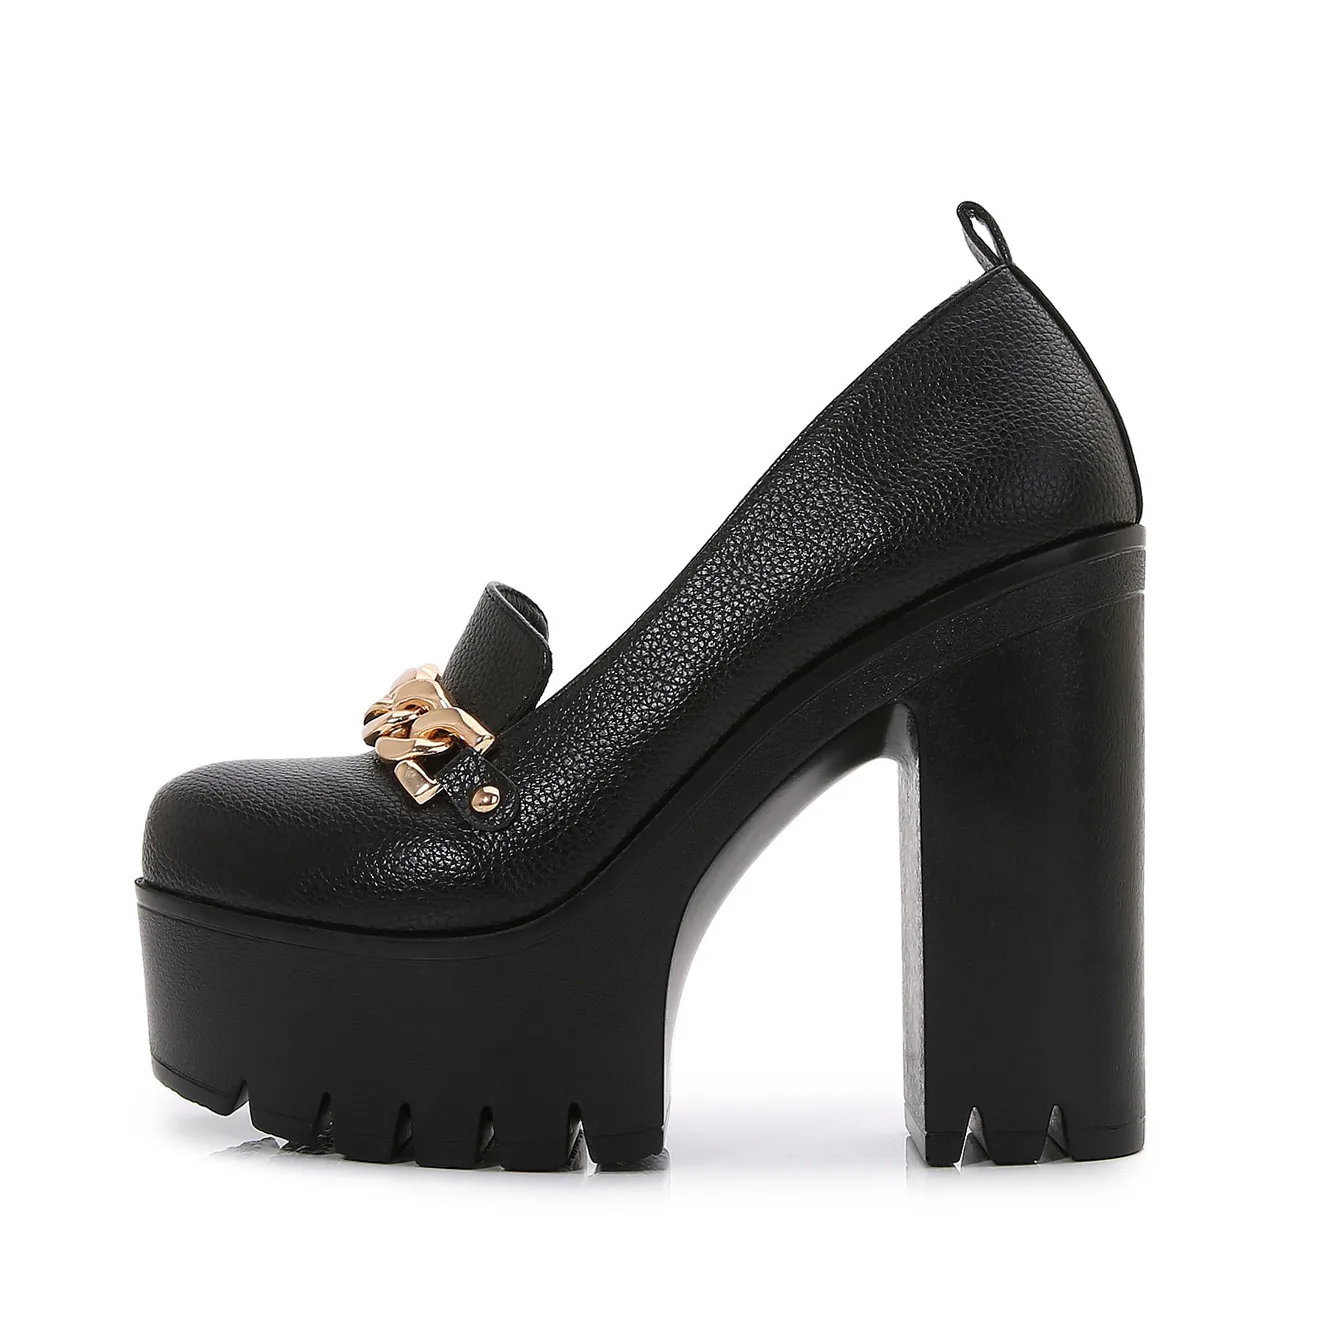 black shoes women's heels